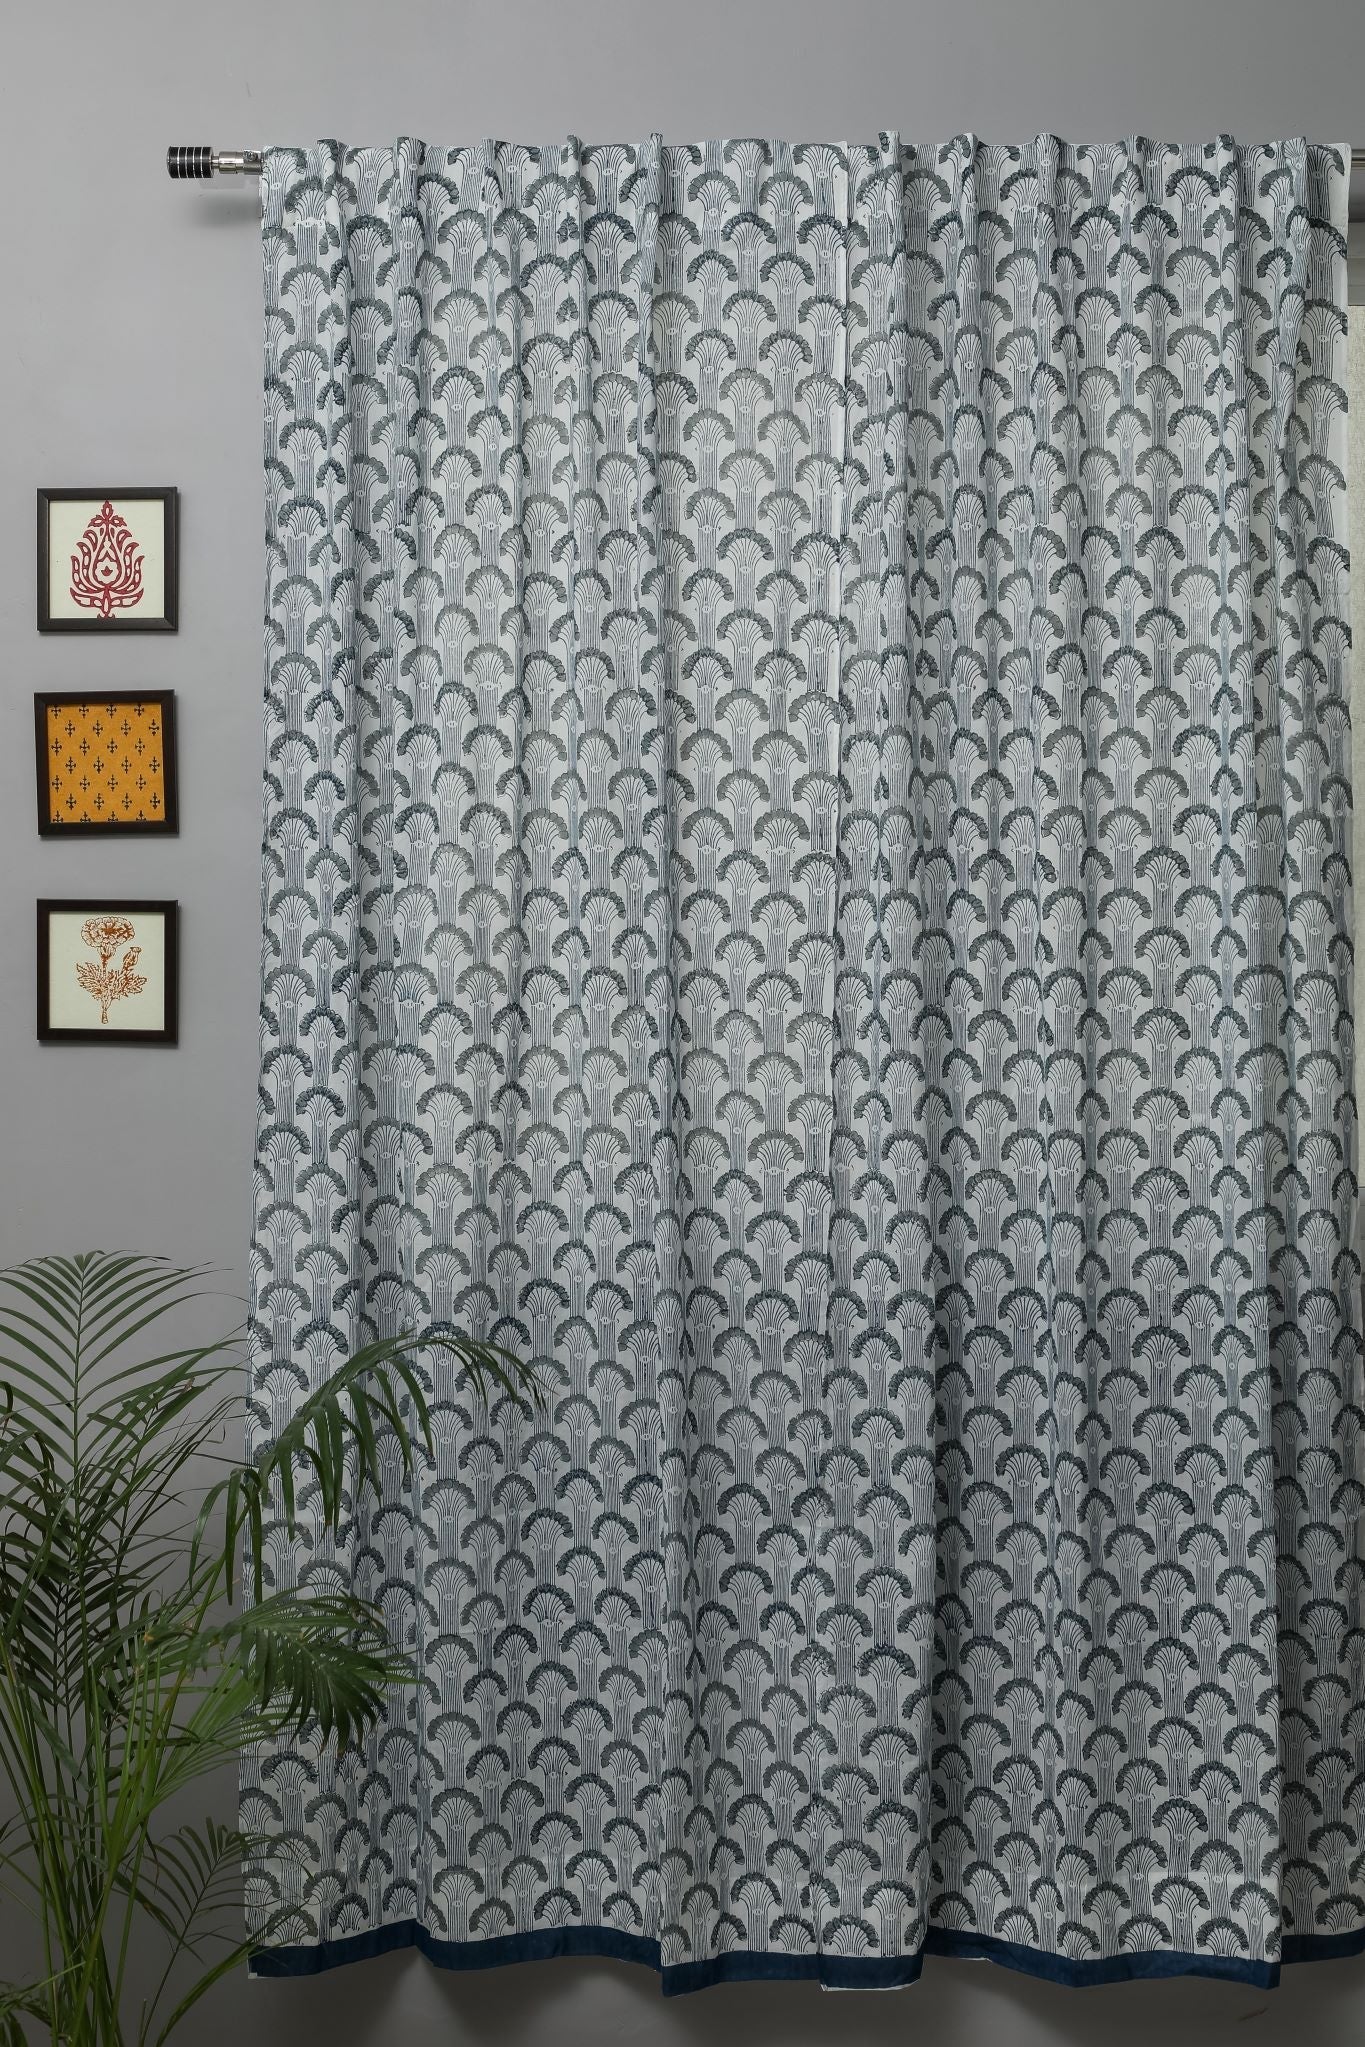 SootiSyahi 'Sargasso Blue' Handblock Printed Cotton Door Curtain - SootiSyahi